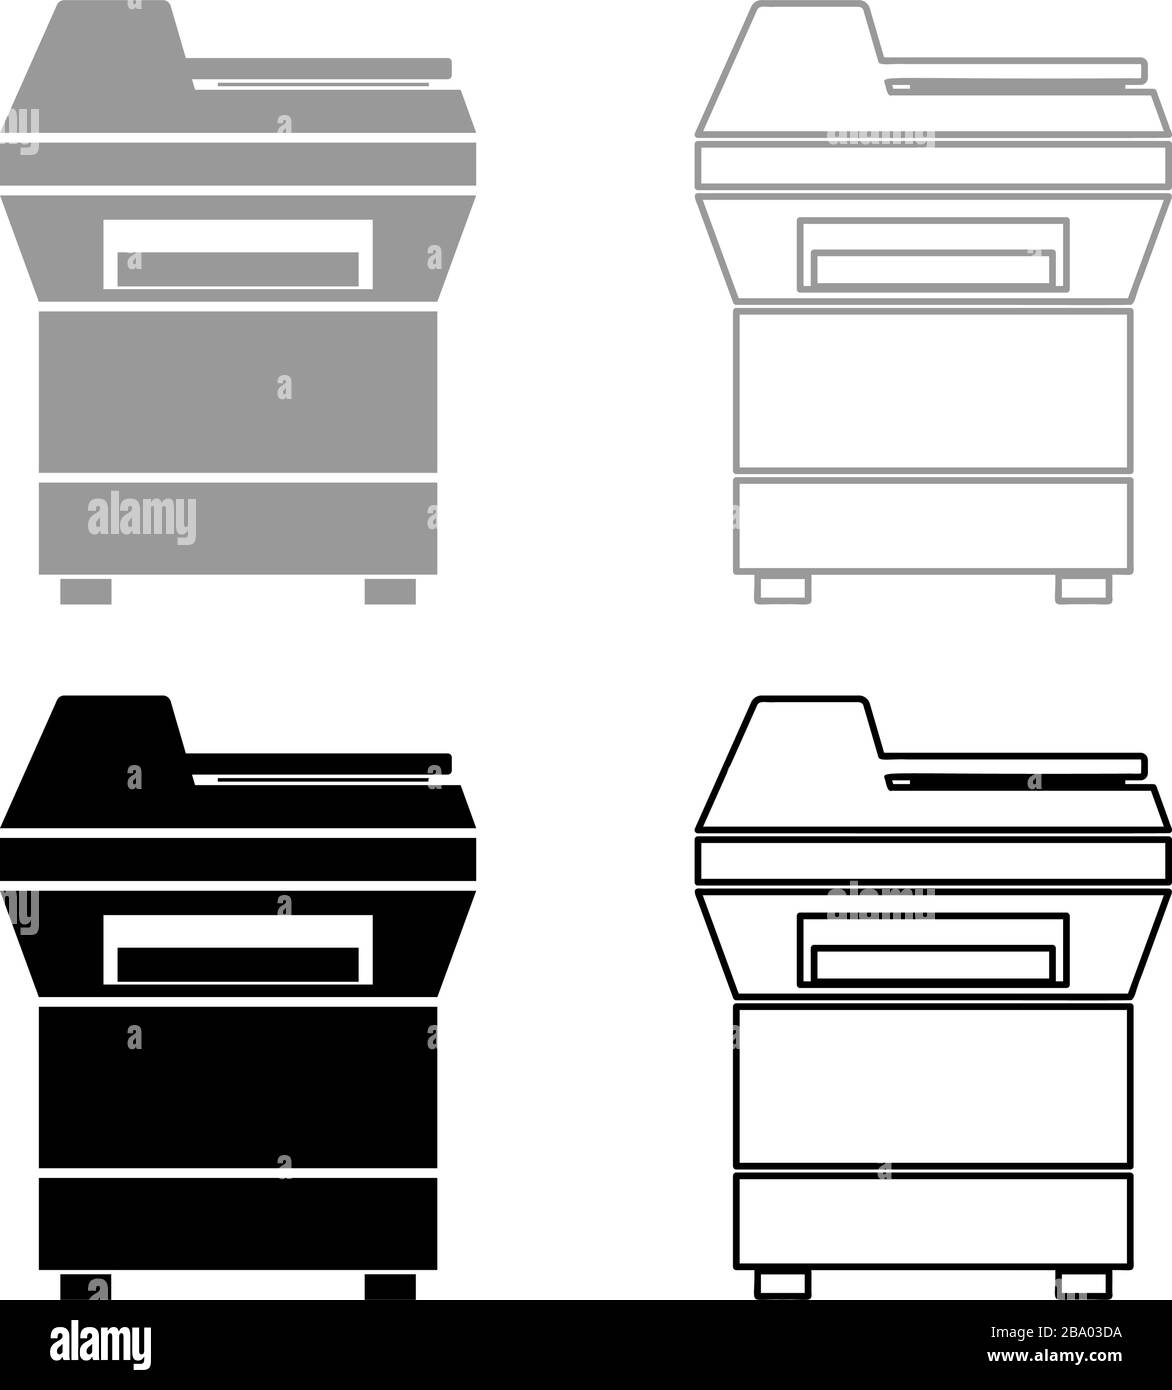 Fotocopiatrice stampante fotocopiatrice per ufficio fotocopiatrice duplicata icona strumentazione contorno nero grigio colore illustrazione vettoriale stile piatto semplice immagine Illustrazione Vettoriale